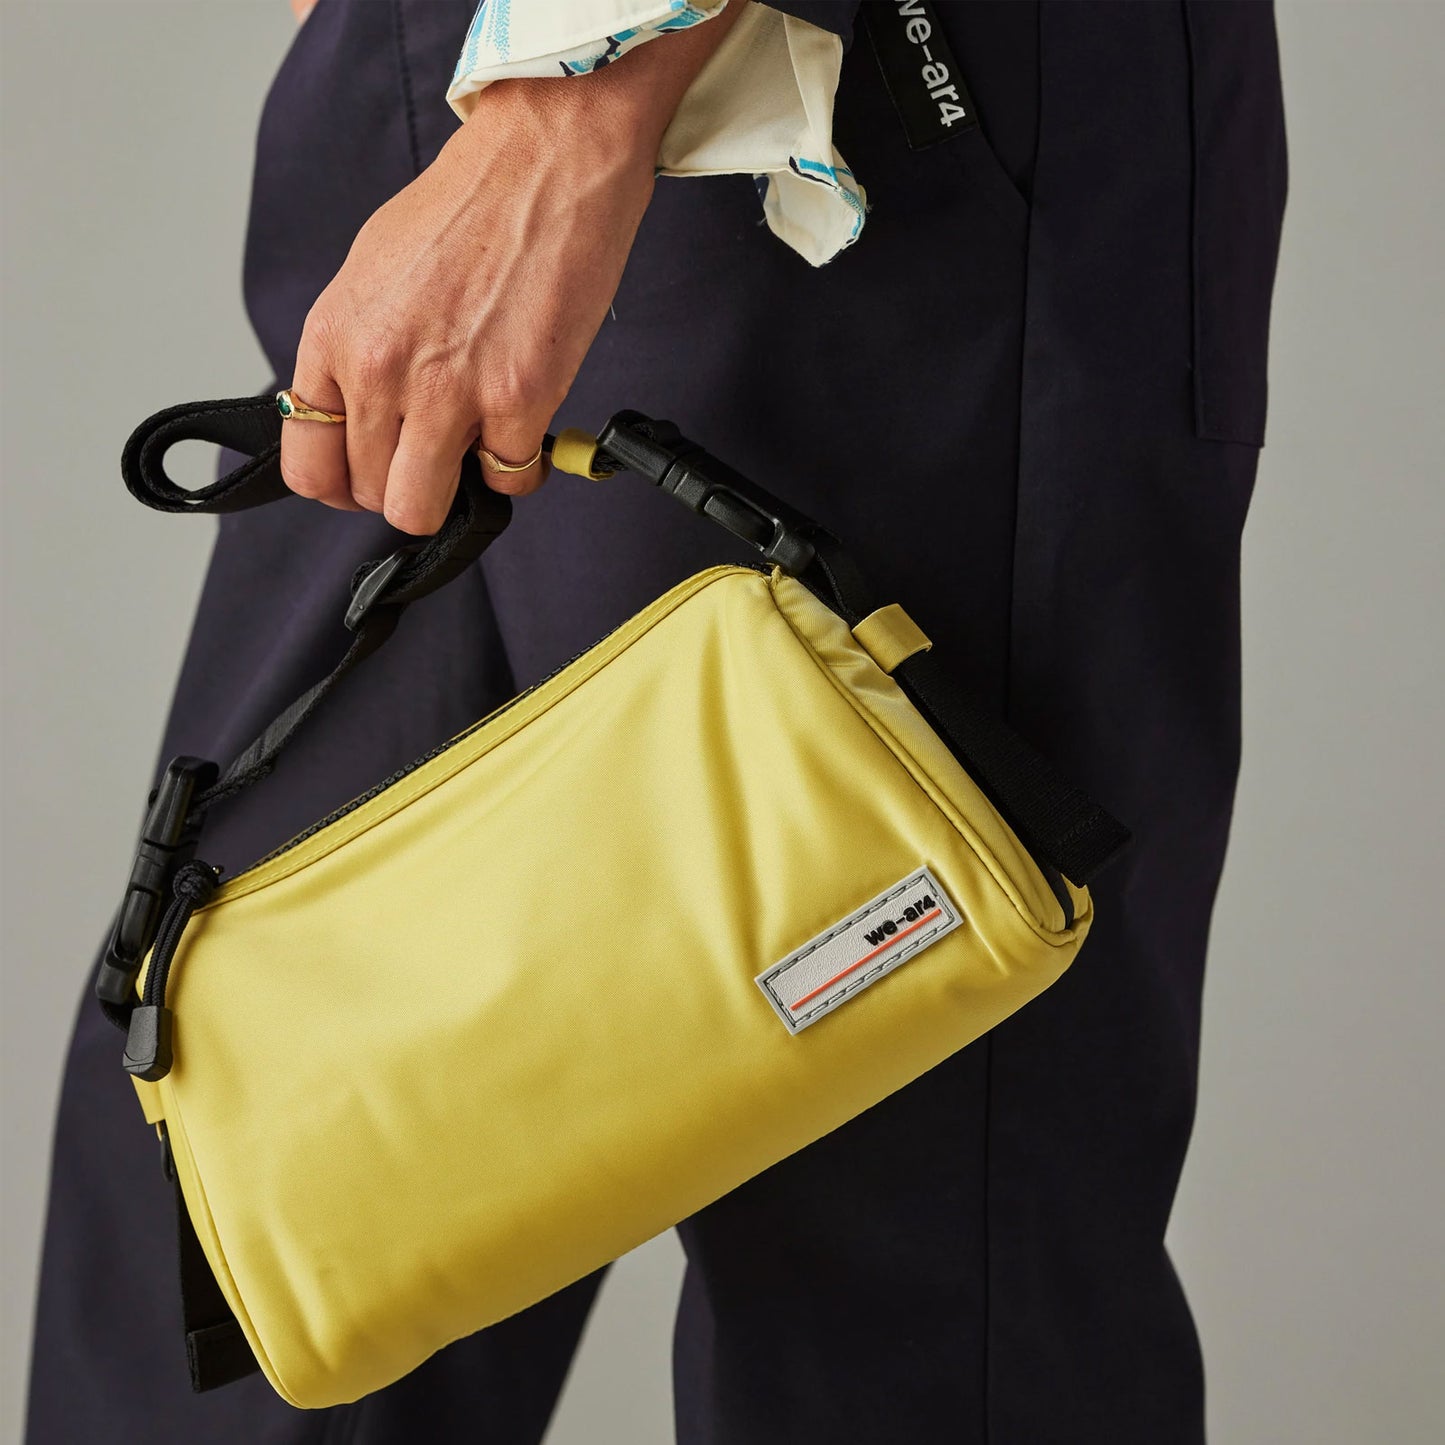 The Kyoto Bag in Lemon